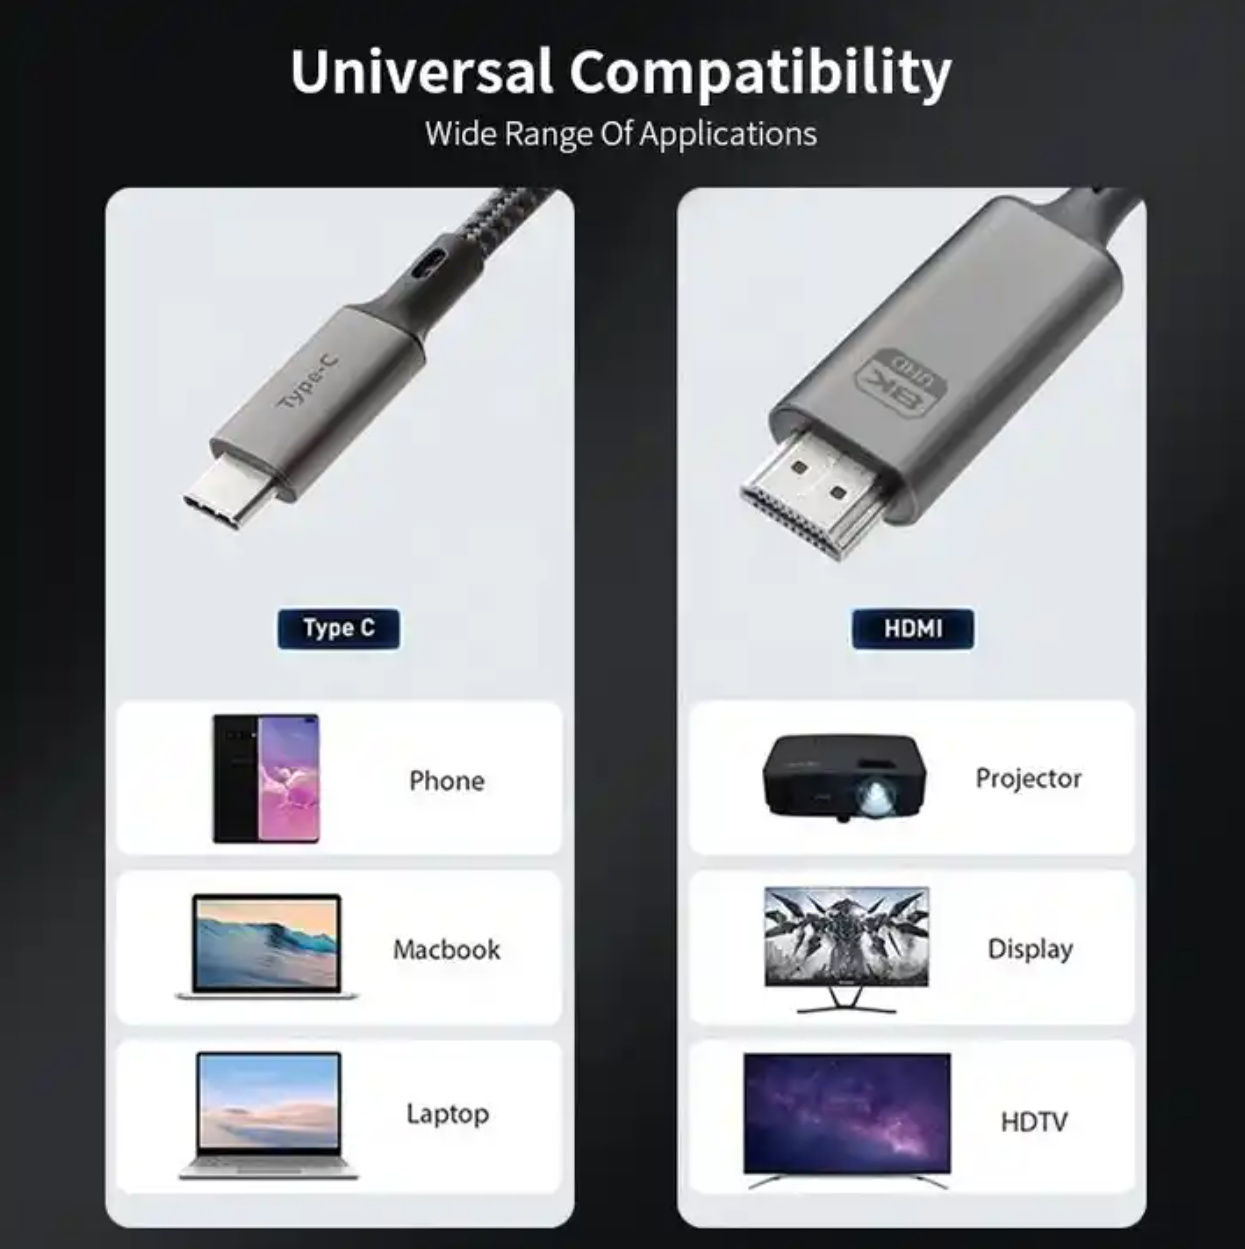 Yulian USB-C-auf-HDMI-Kabel | C2H | 8K60HZ 48 Gbit/s | Video und Audio | 1m